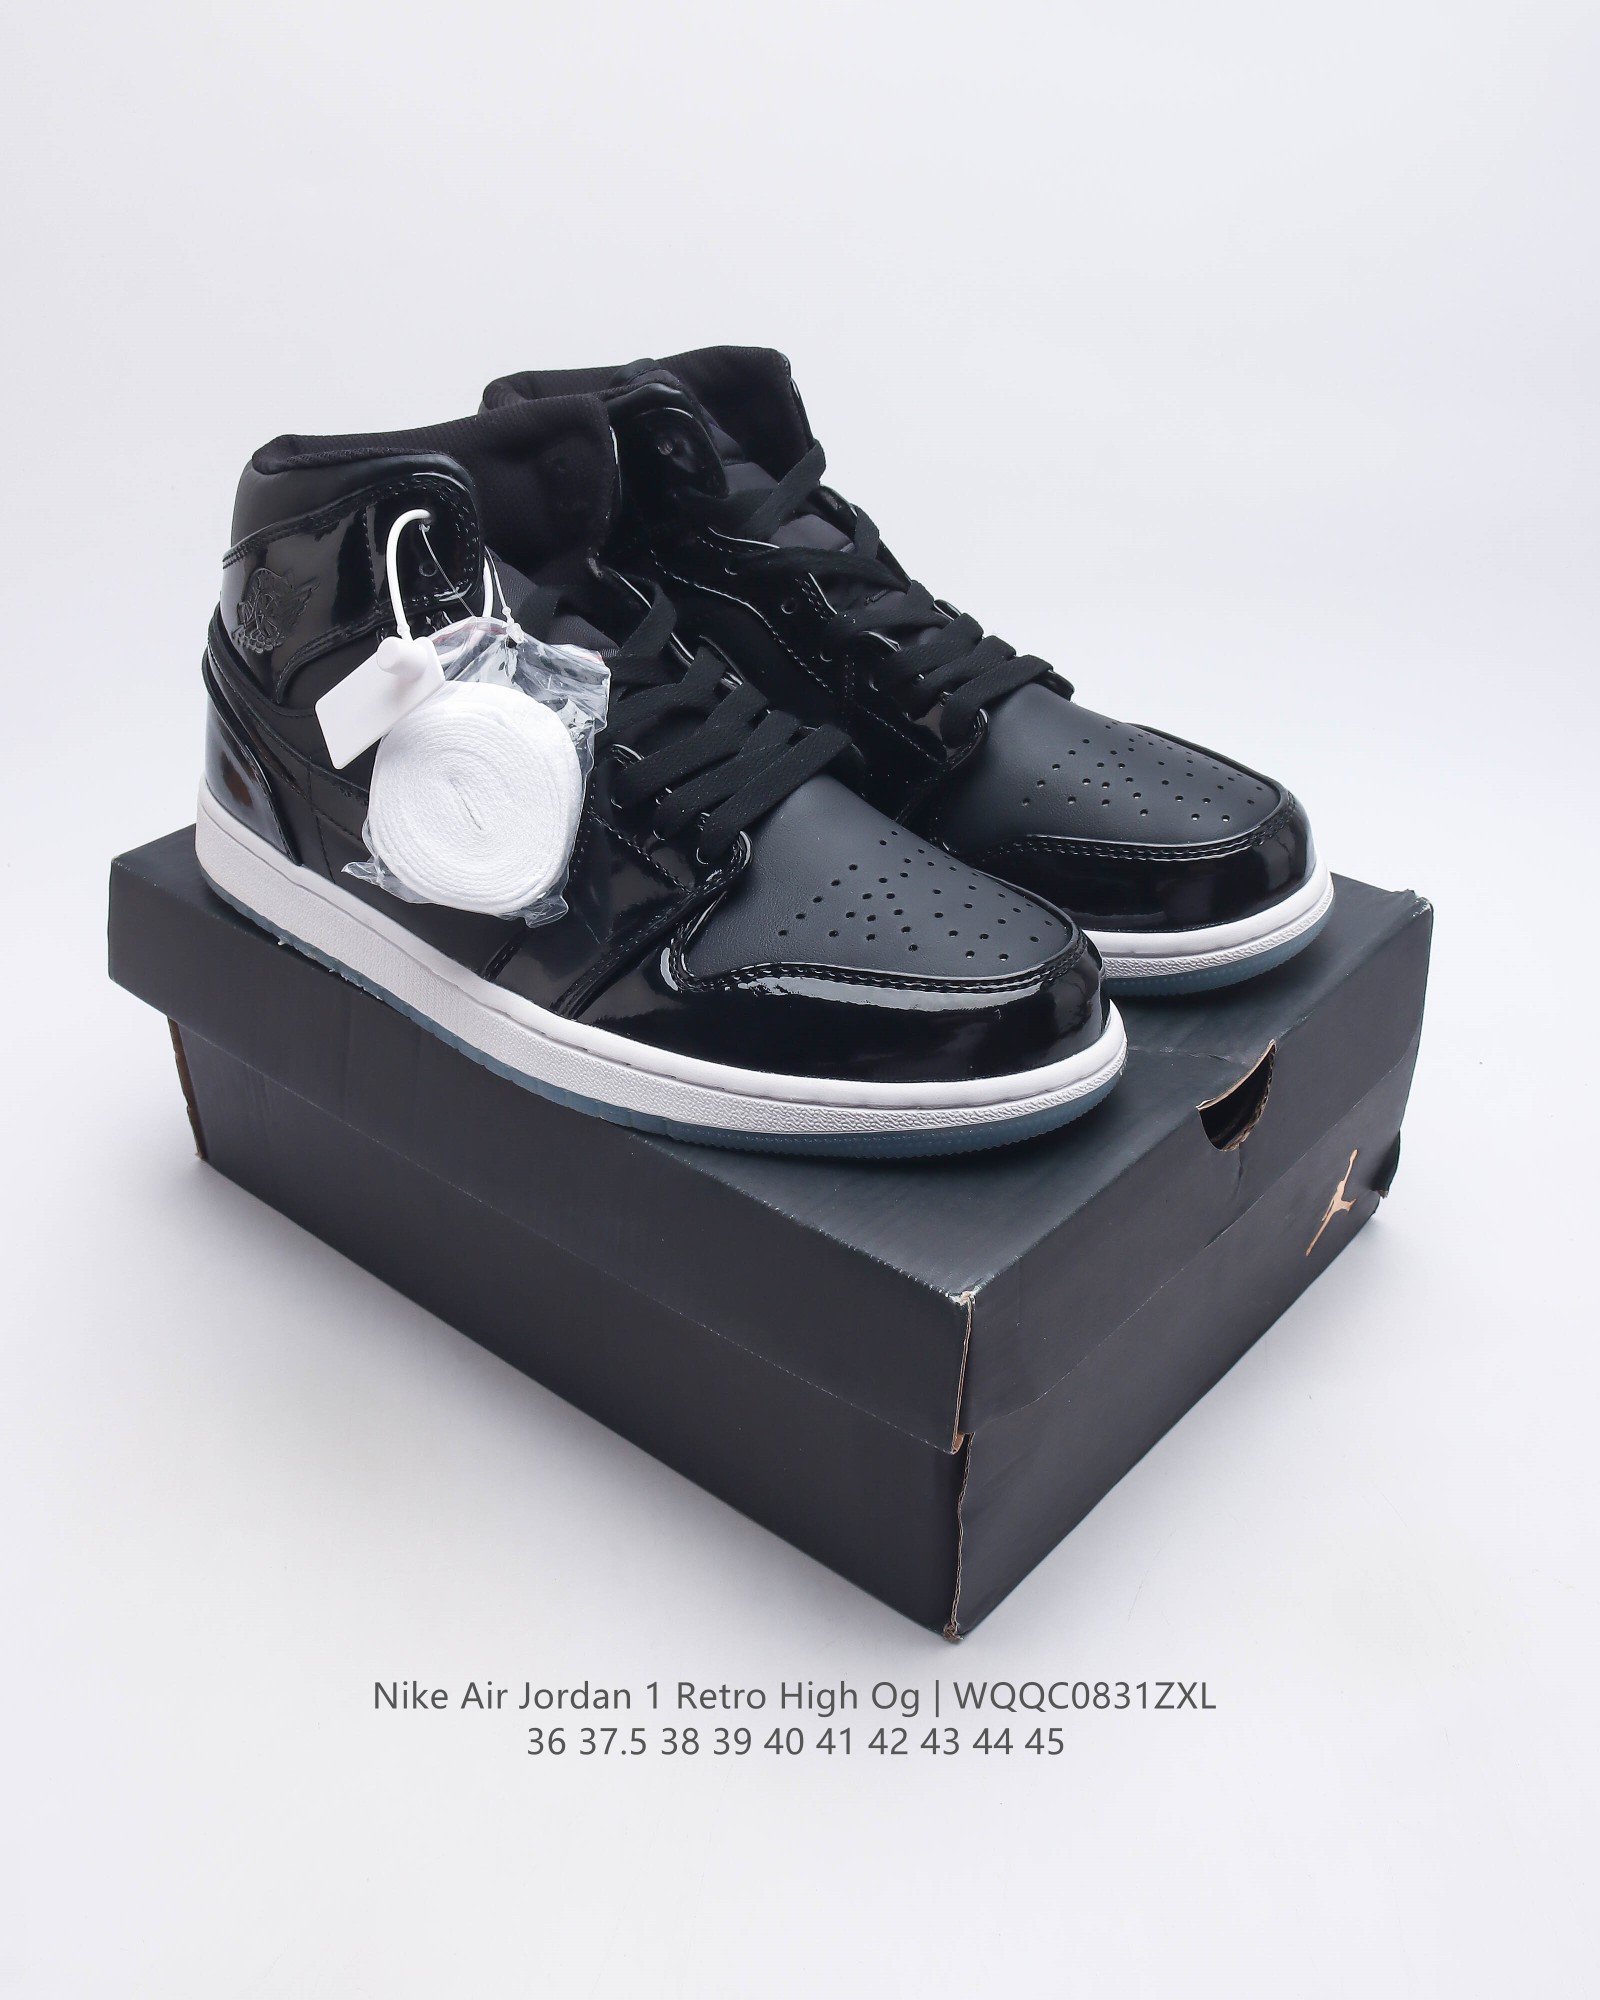 耐克 Nike Air Jordan 1 Retro High Og 乔丹一代篮球鞋复刻运动鞋 皮面高帮板鞋的设计灵感源自运动夹克 带你重温入选球队时刻 采用经